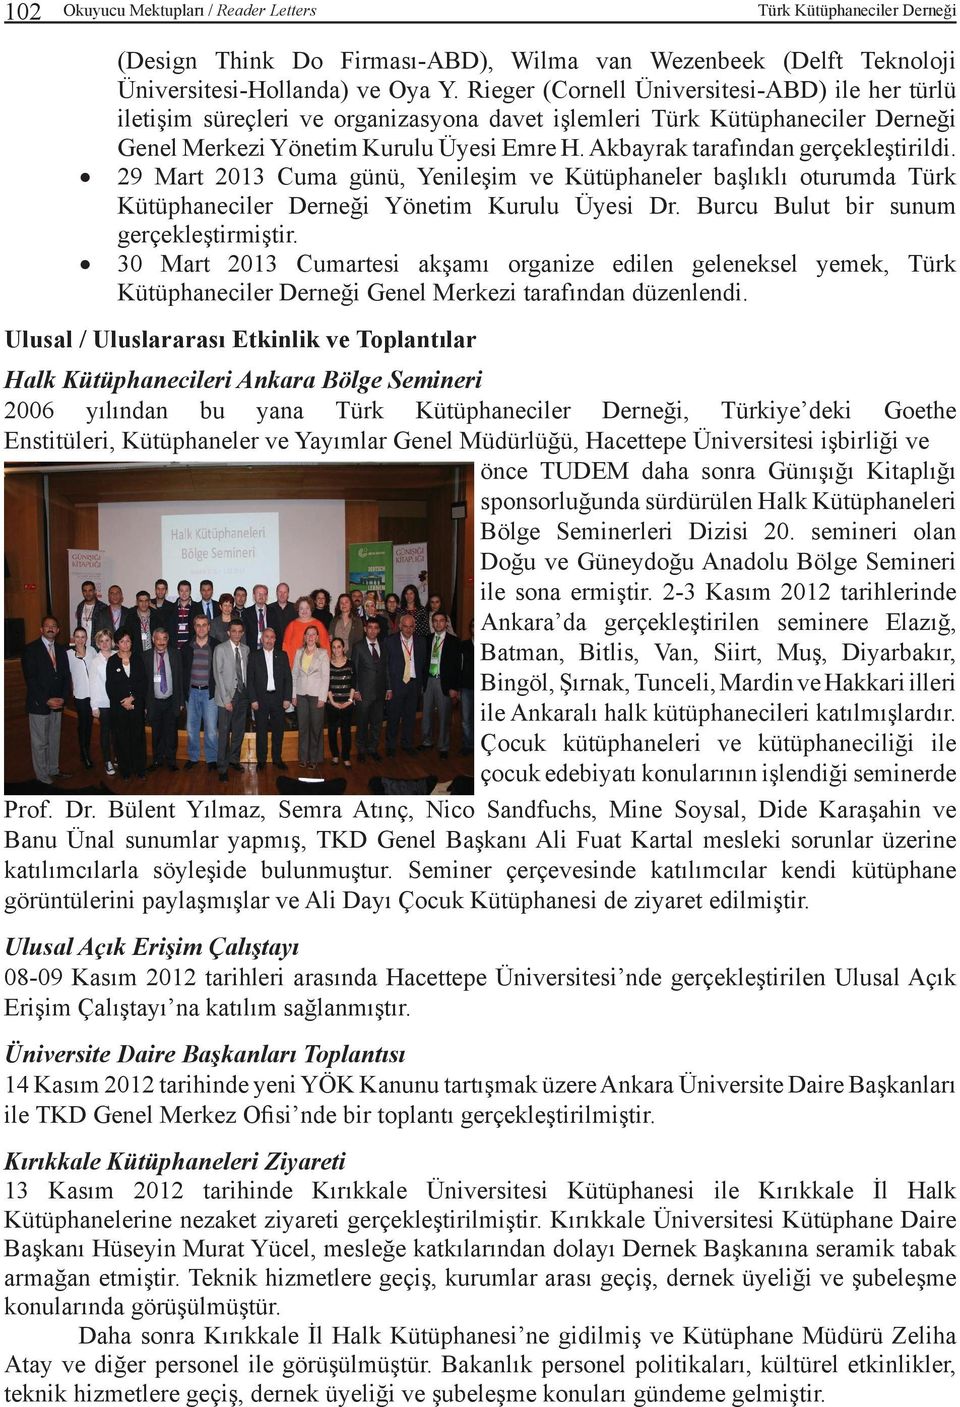 Akbayrak tarafından gerçekleştirildi. 29 Mart 2013 Cuma günü, Yenileşim ve Kütüphaneler başlıklı oturumda Türk Kütüphaneciler Derneği Yönetim Kurulu Üyesi Dr. Burcu Bulut bir sunum gerçekleştirmiştir.